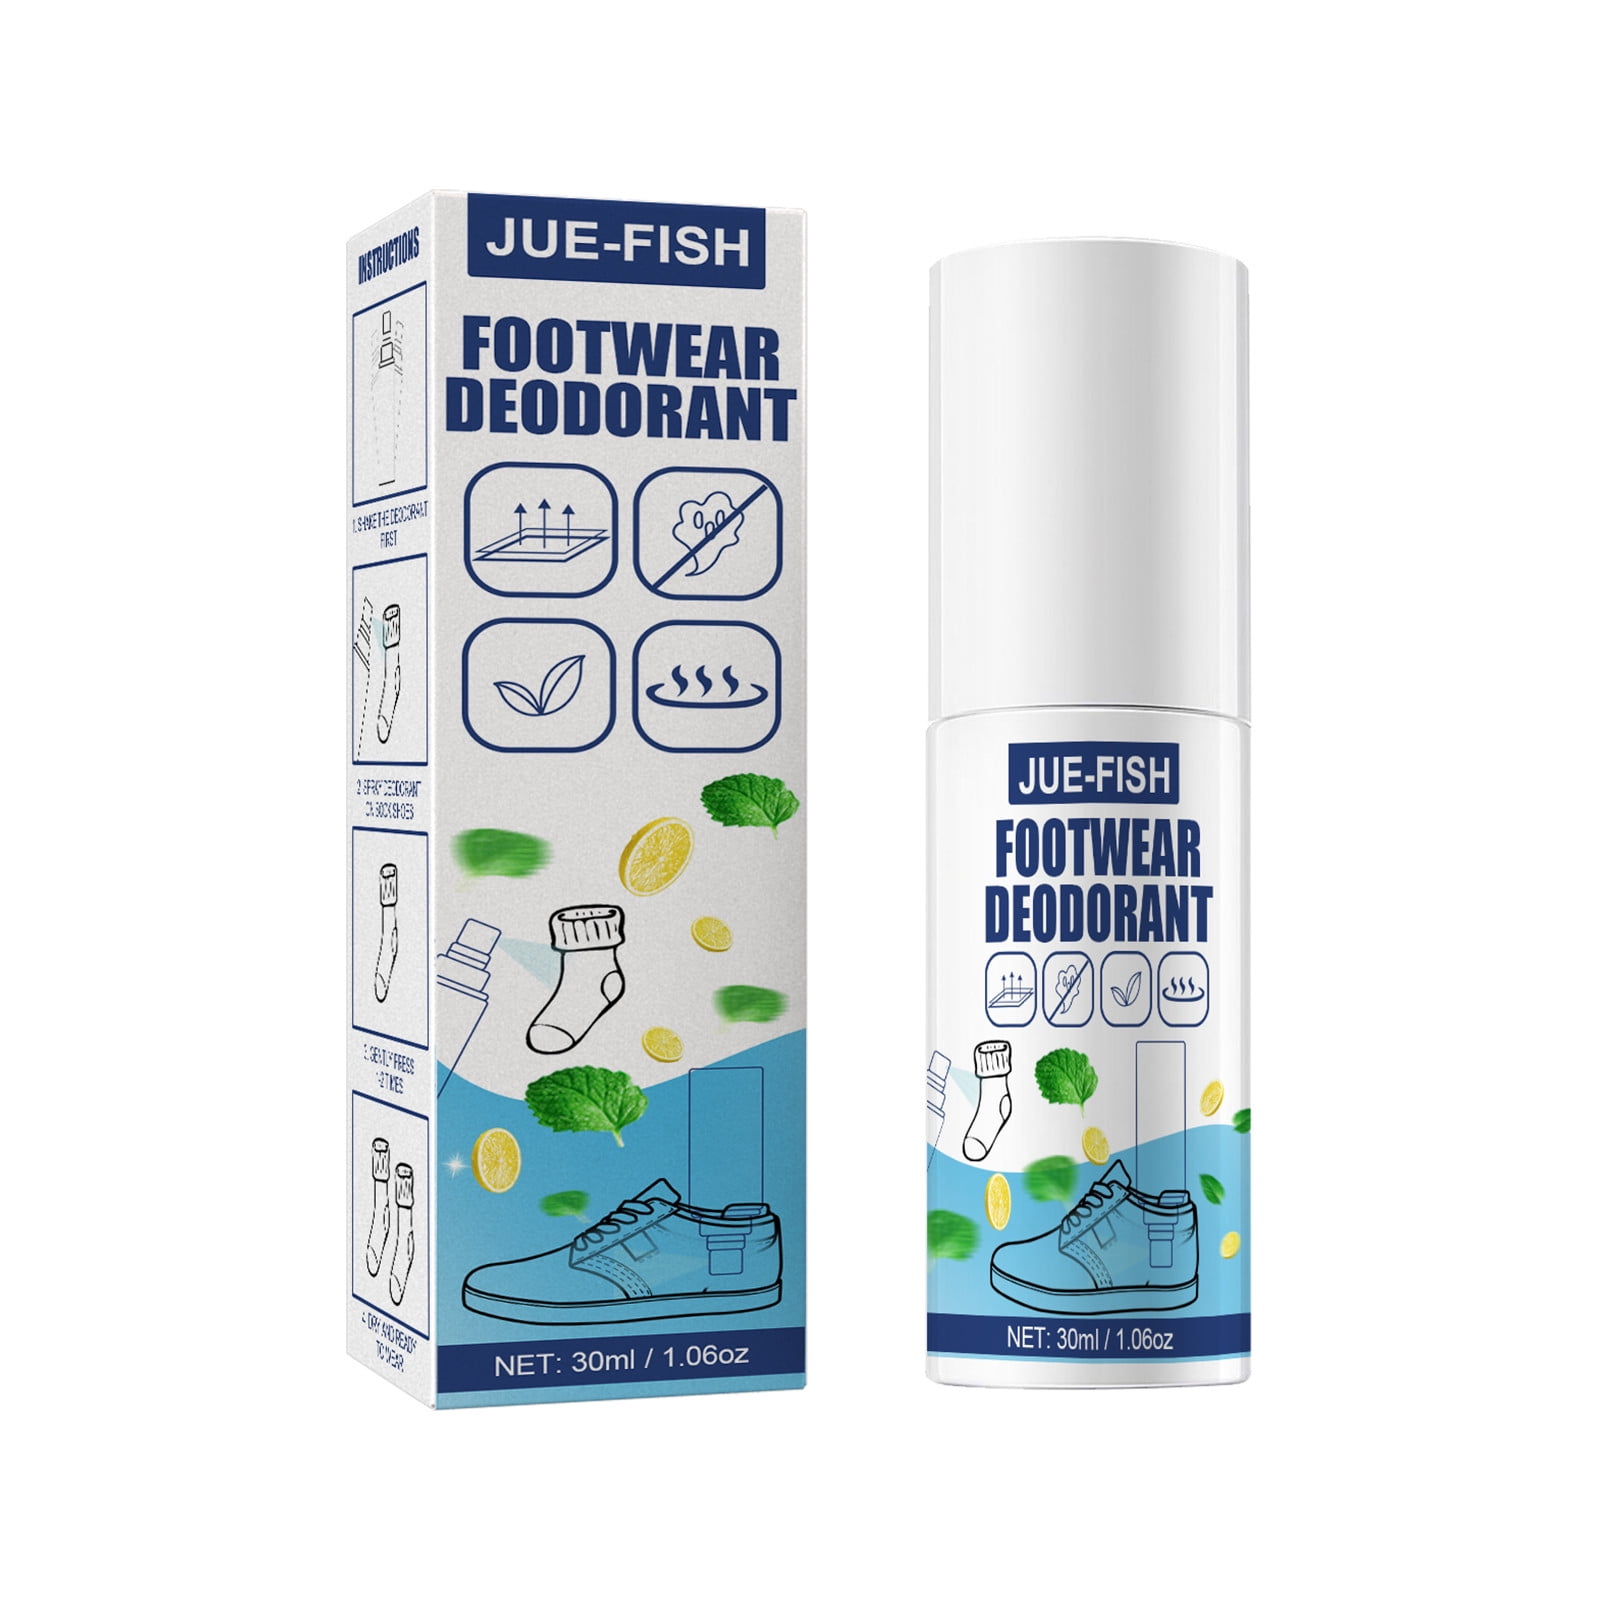 Akileine Footwear Deodorant Freshness Effect Spray 150ml